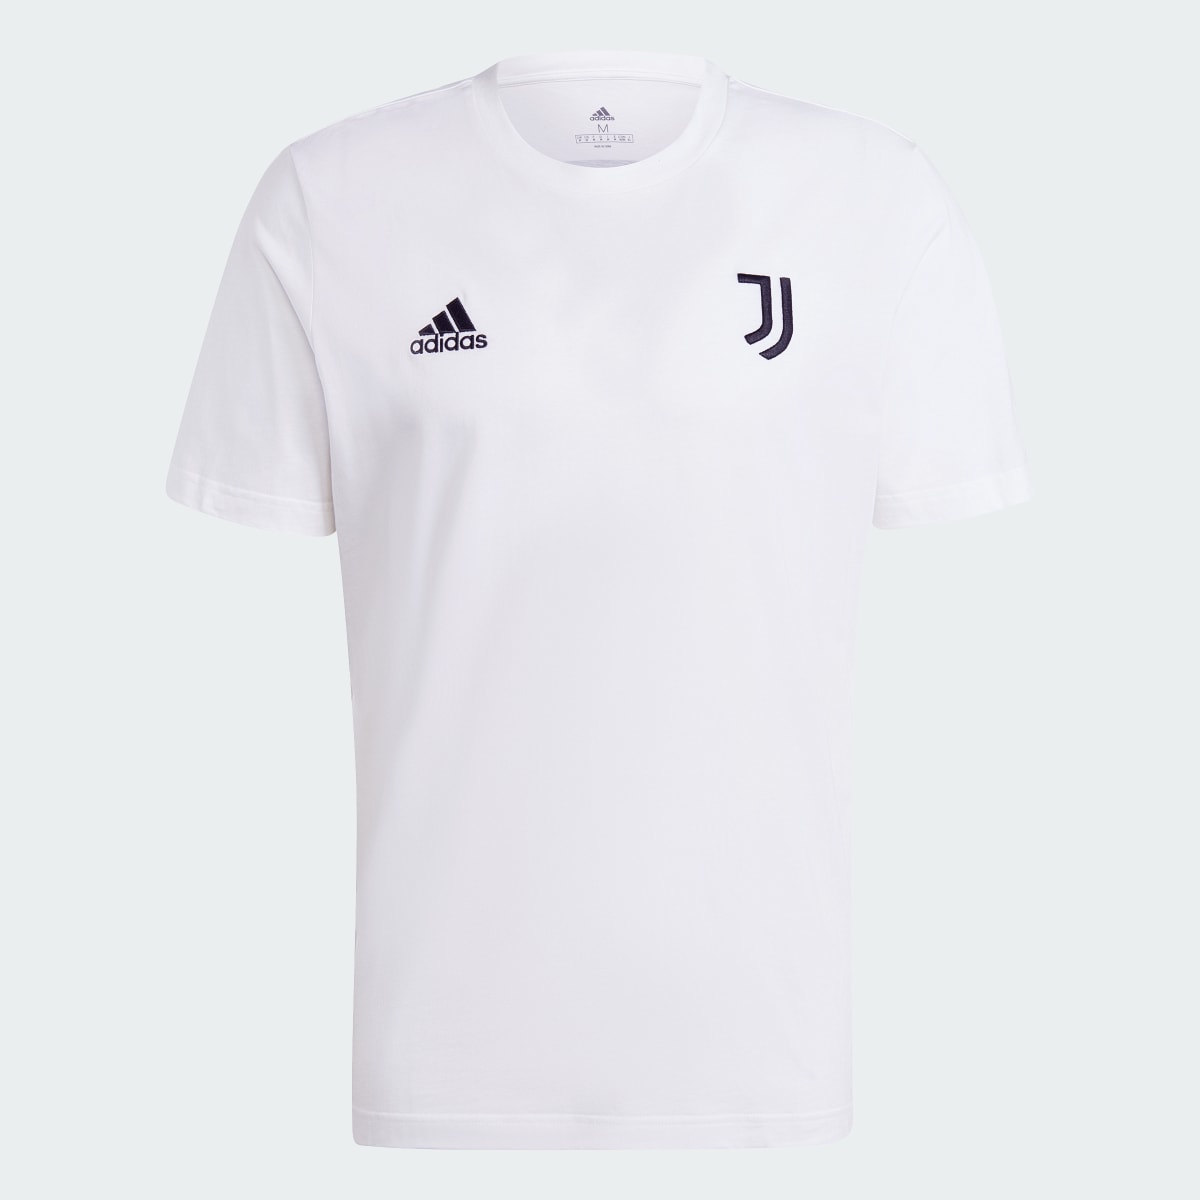 Adidas T-shirt DNA da Juventus. 5